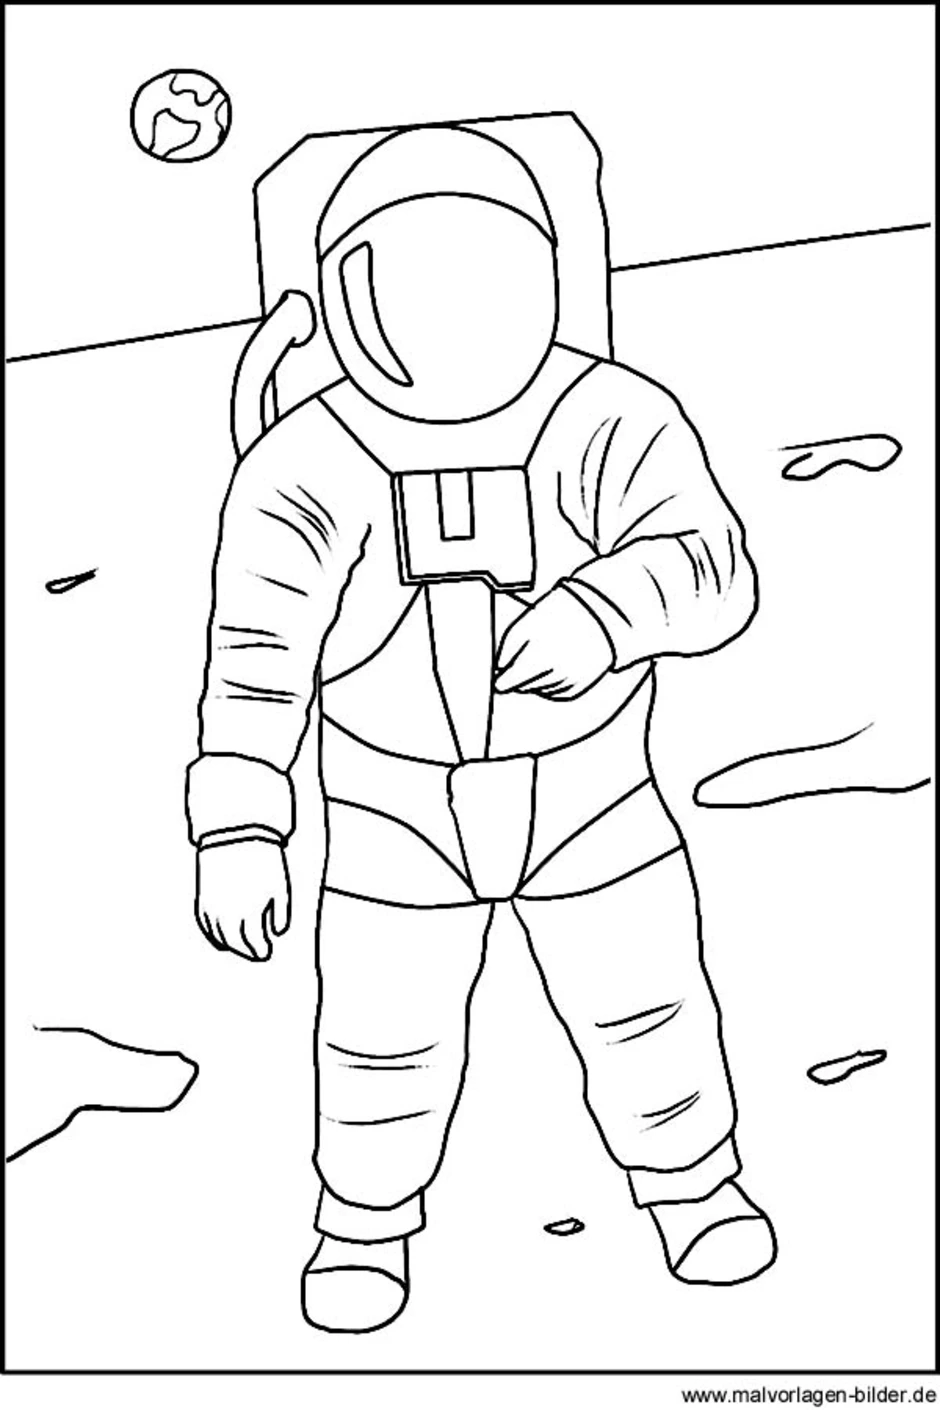 Нарисовать космонавта карандашом. Космонавт раскраска. Космонавт раскраска для детей. Космонавт рисунок. Раскраска человек в скафандре.